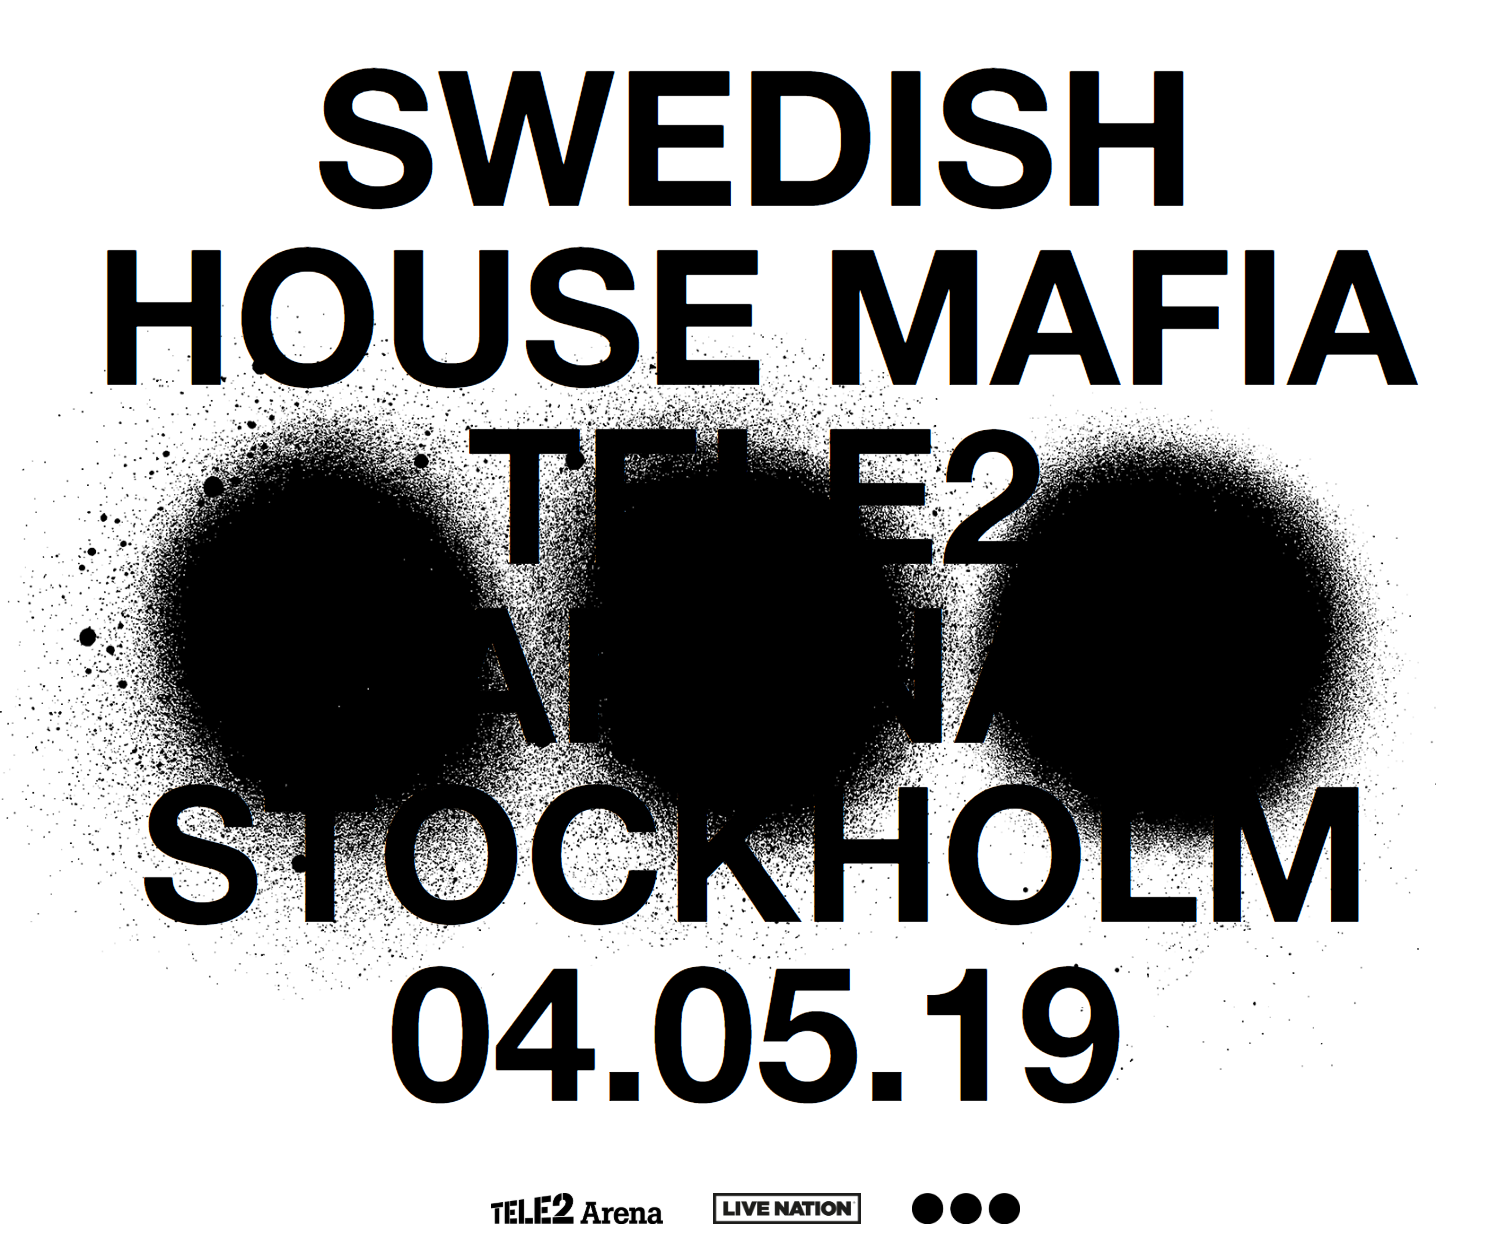 Swedish House Mafia Tele2 Arena Announcement